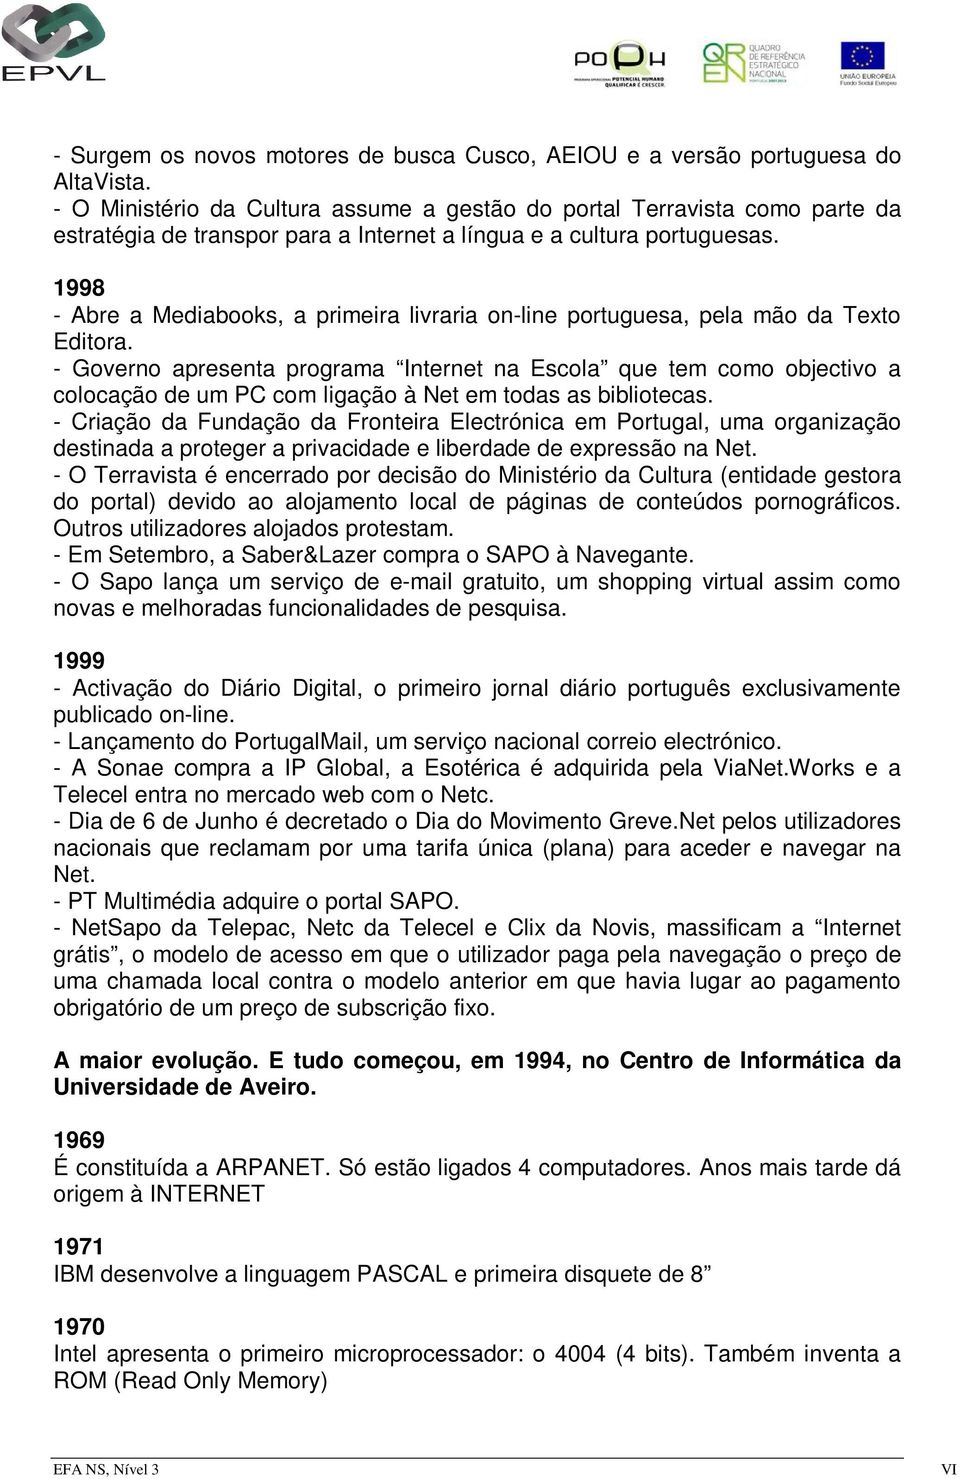 1998 - Abre a Mediabooks, a primeira livraria on-line portuguesa, pela mão da Texto Editora.